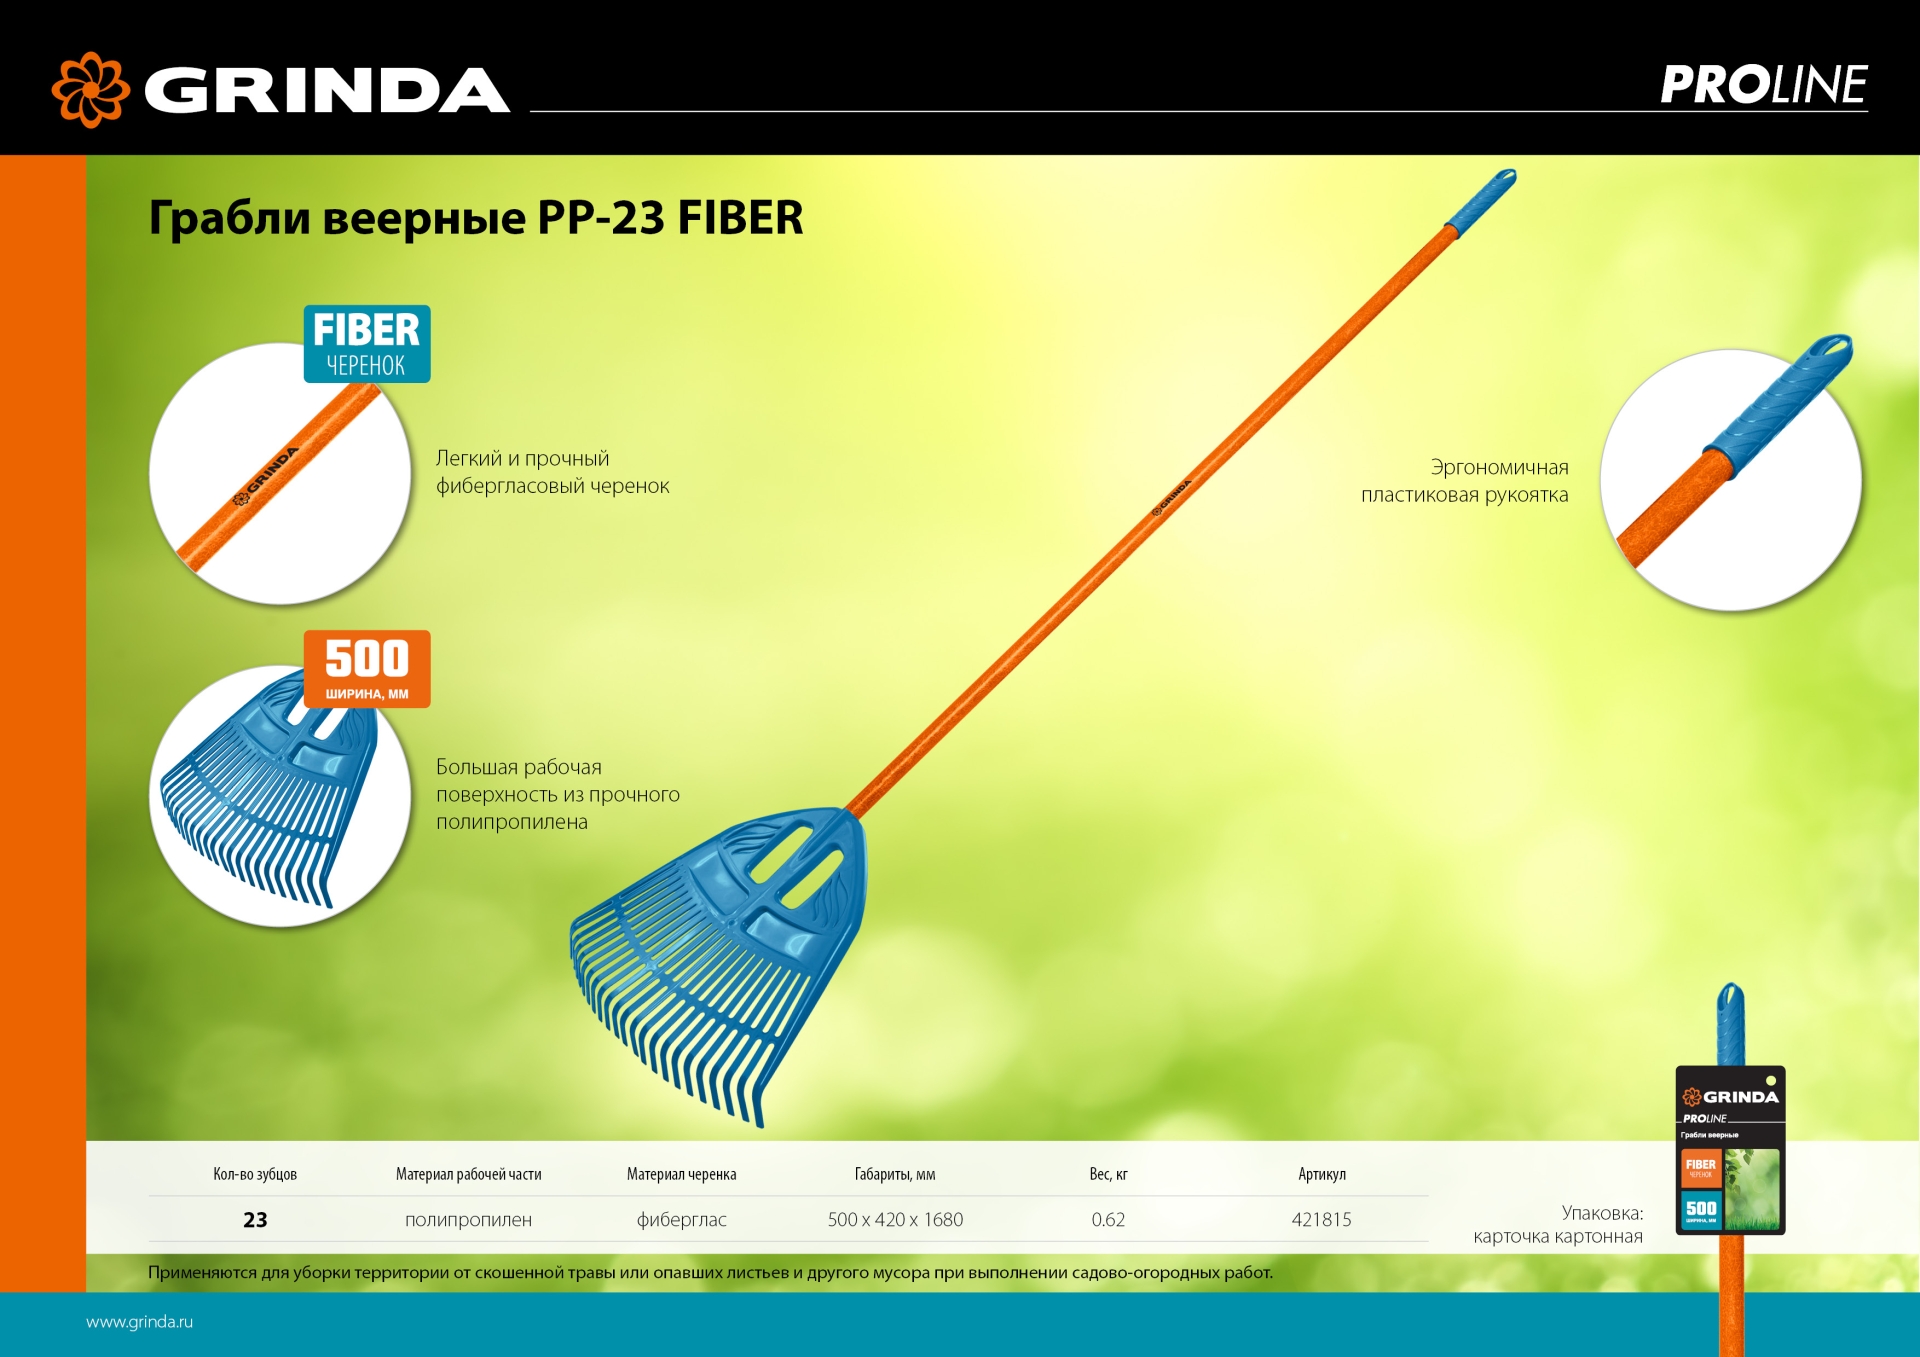 GRINDA PP-23 FIBER, 500 х 50 х 1680 мм, 23 зубца, ударопрочный пластик, фибергласовый черенок, грабли веерные пластиковые, PROLine (421815)